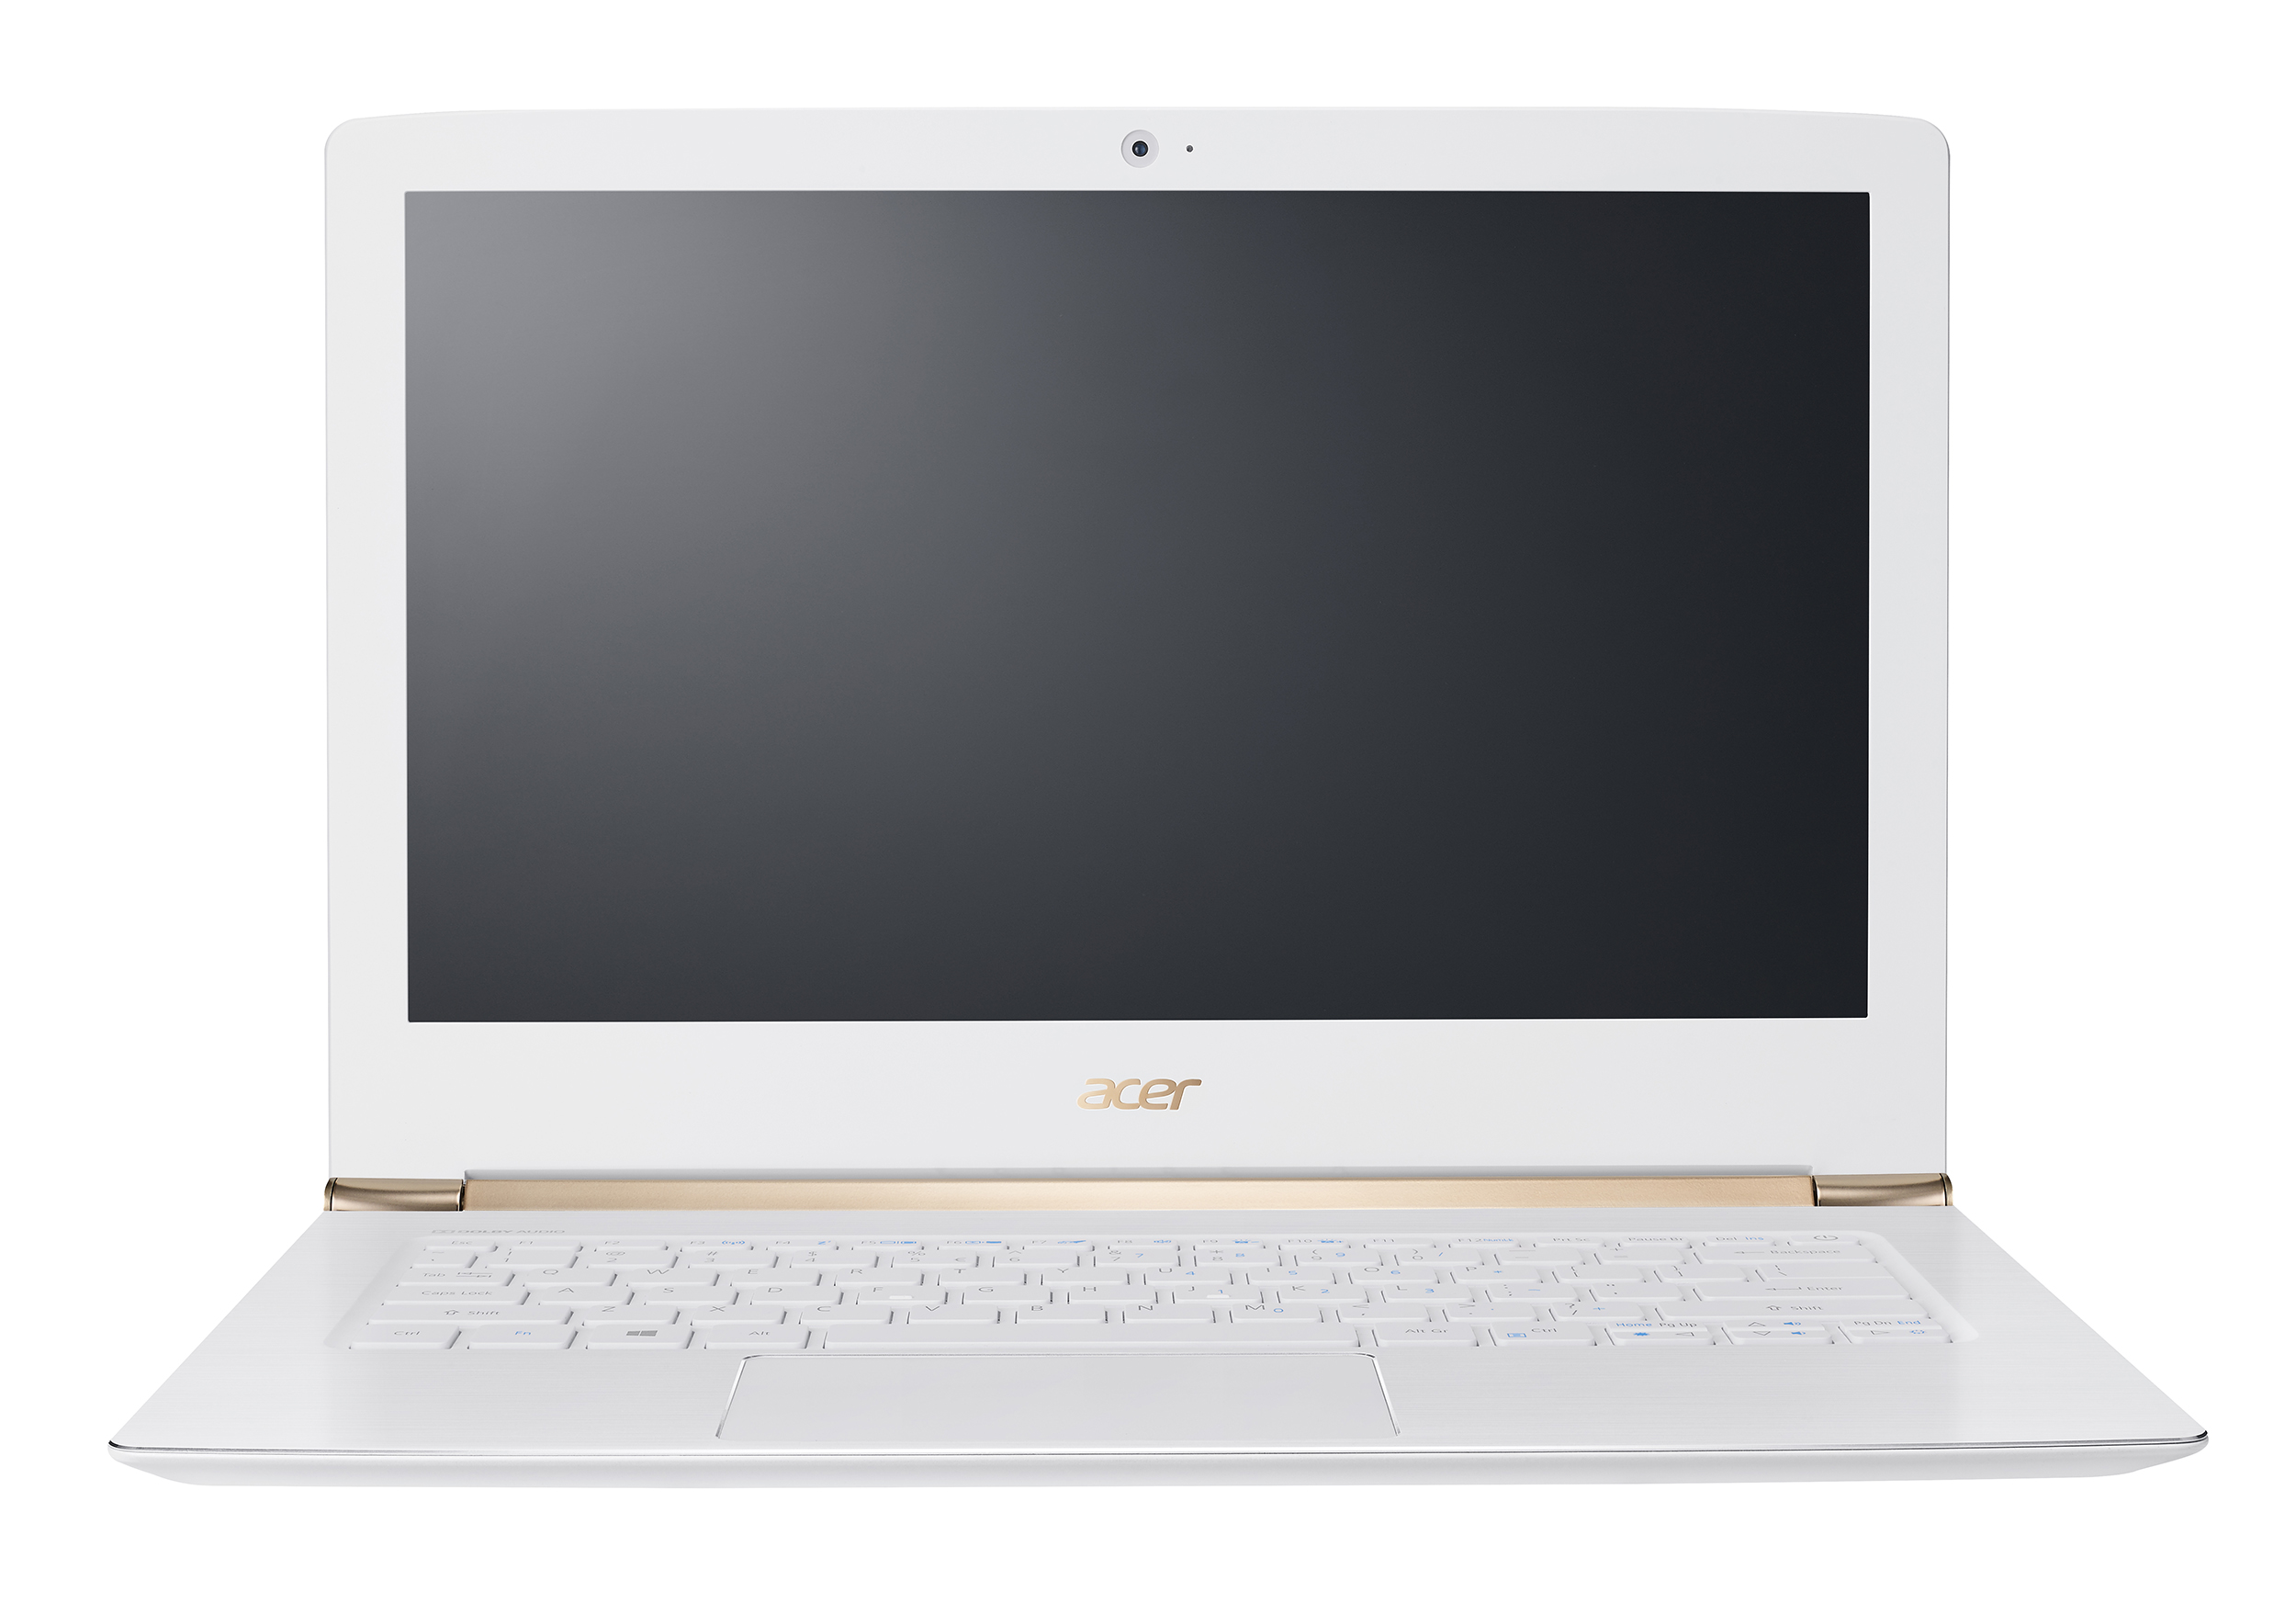 Ultra ince Acer Aspire S 13, güçlü donanımı ve şık tasarımı birleştiriyor